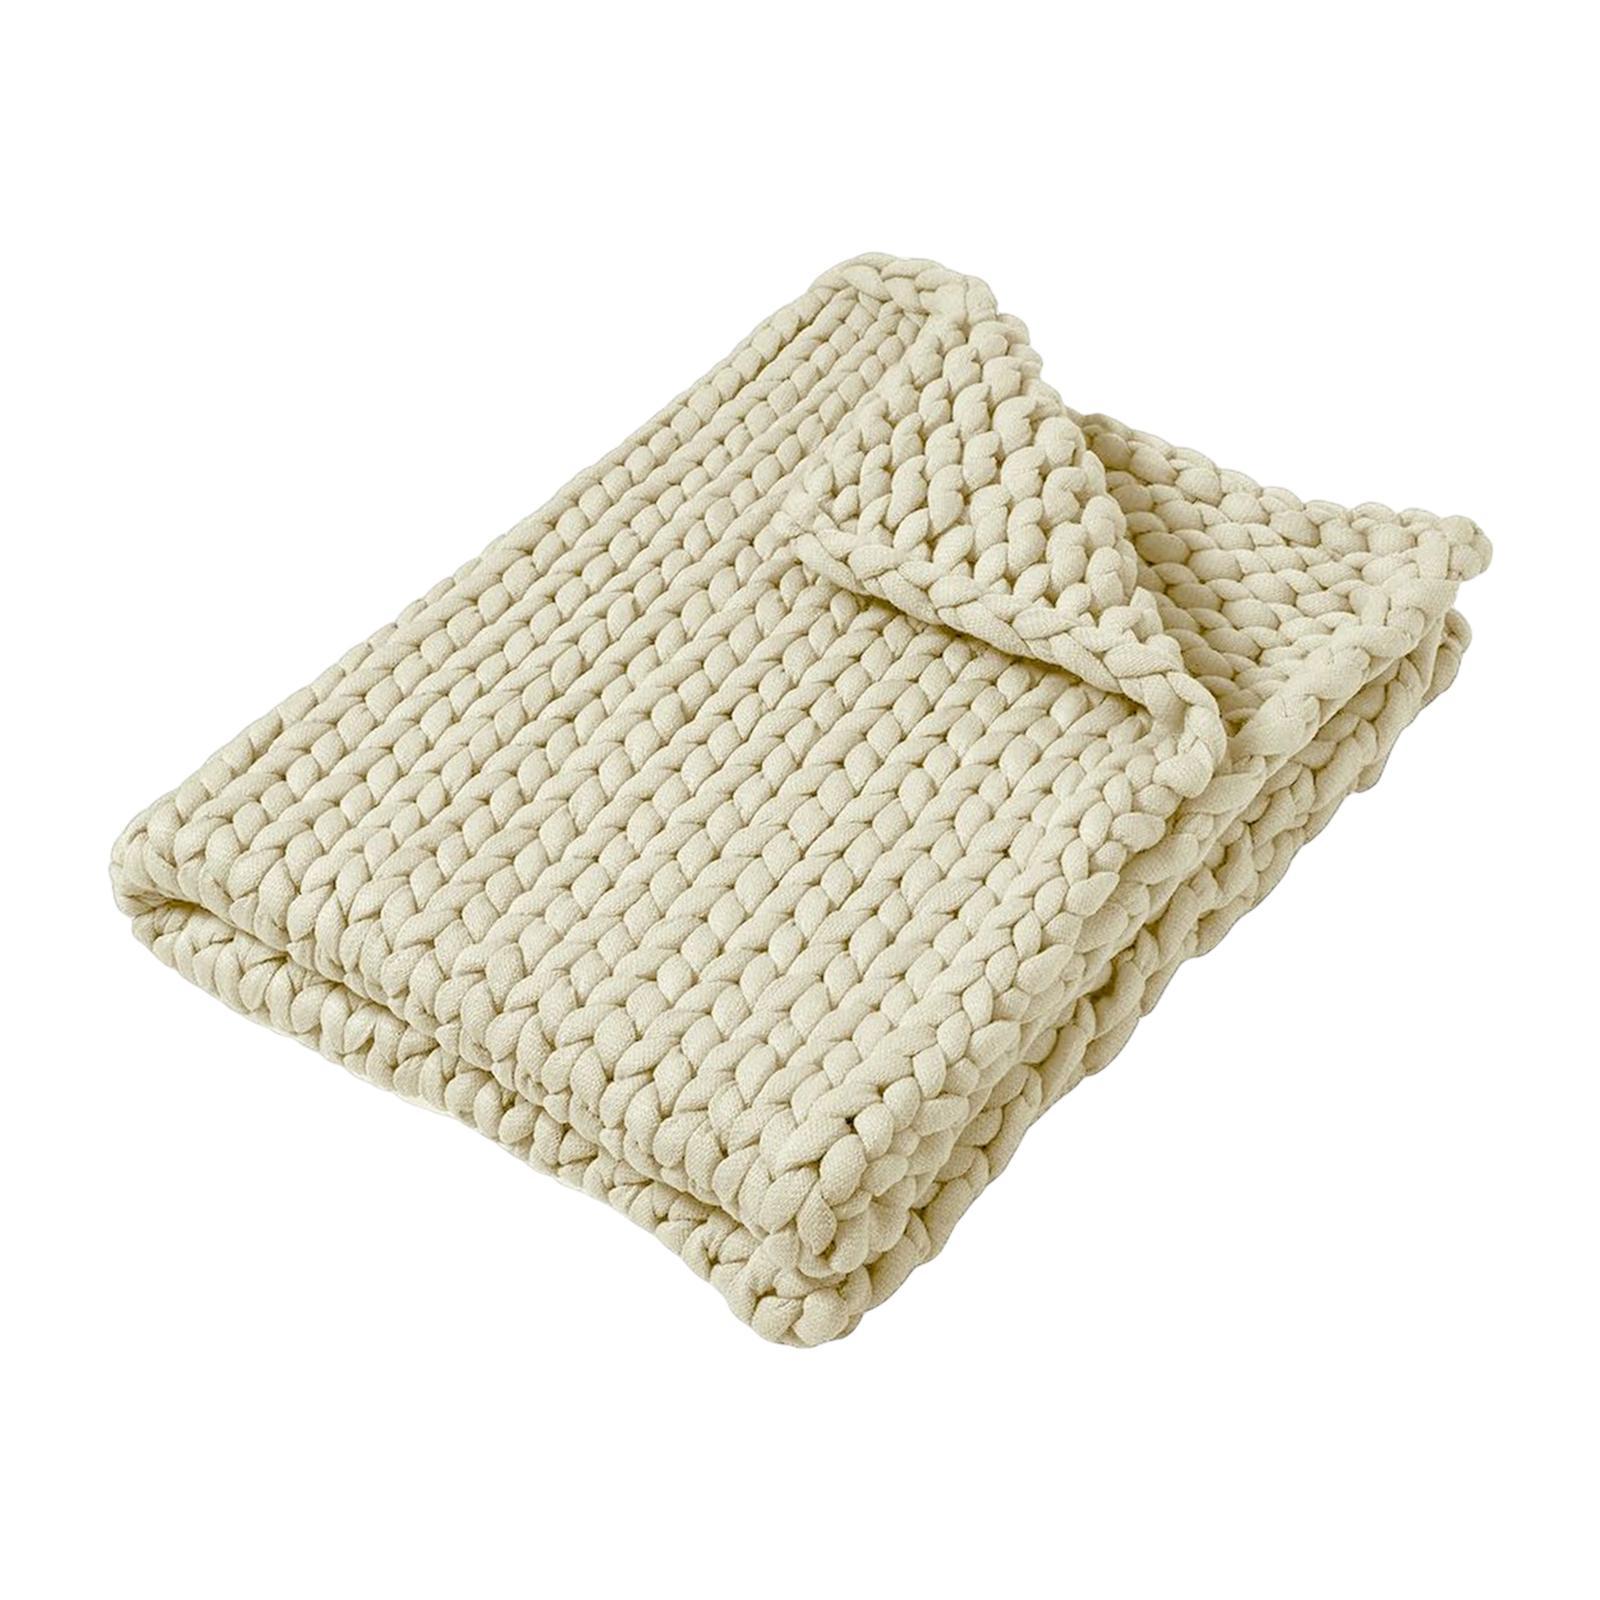 Handmade Chunky Knit Blanket Knitted Blanket for Living Room Bedroom Decor - Beige